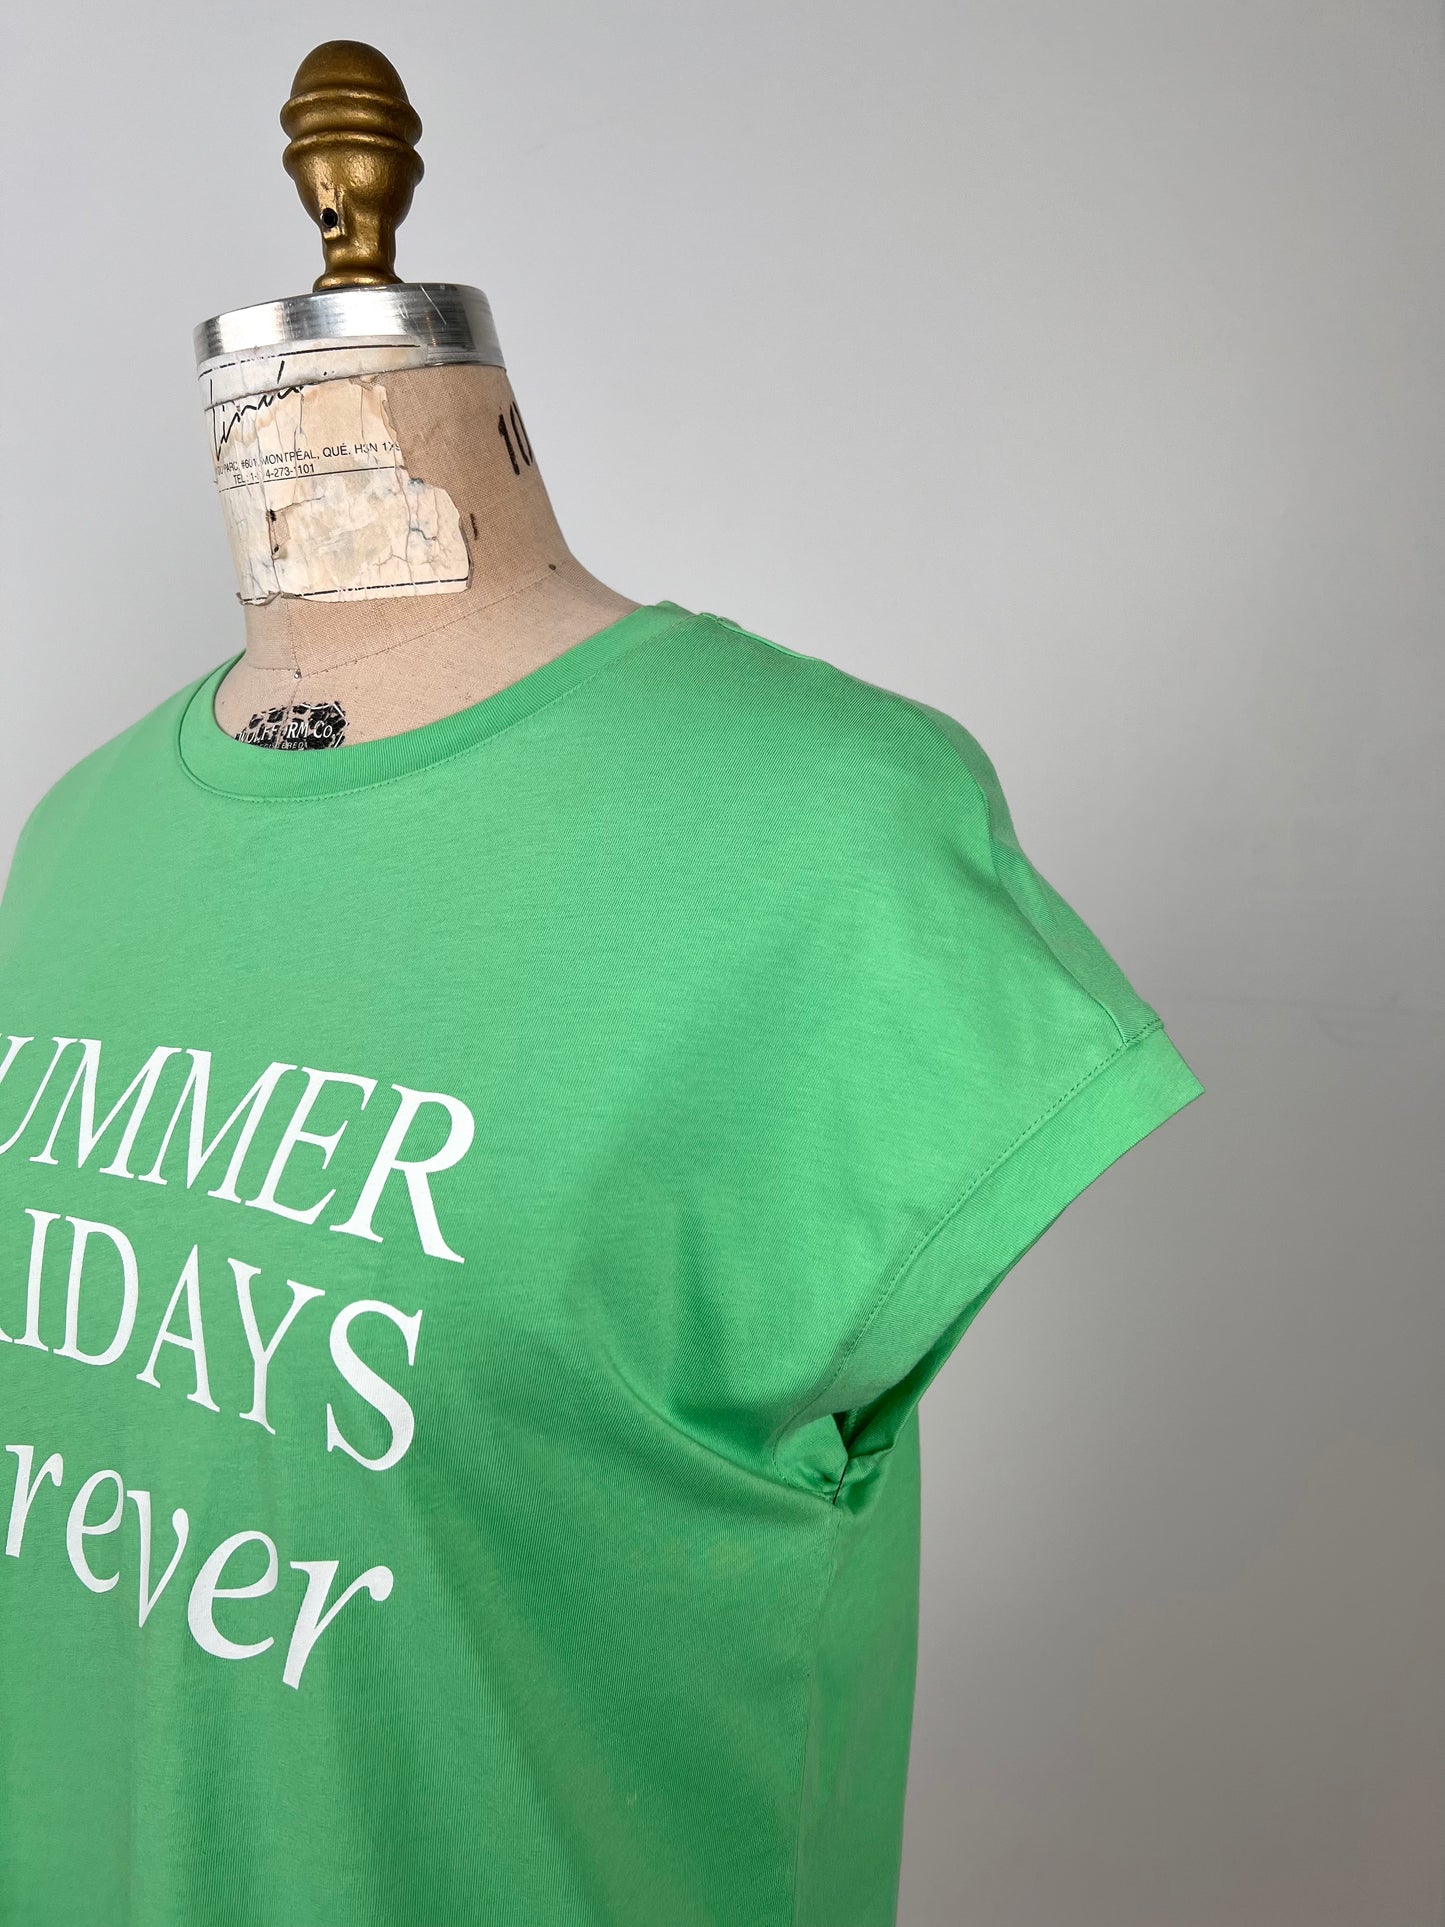 T-shirt vert menthe "SUMMER FRIDAYS forever" (6)